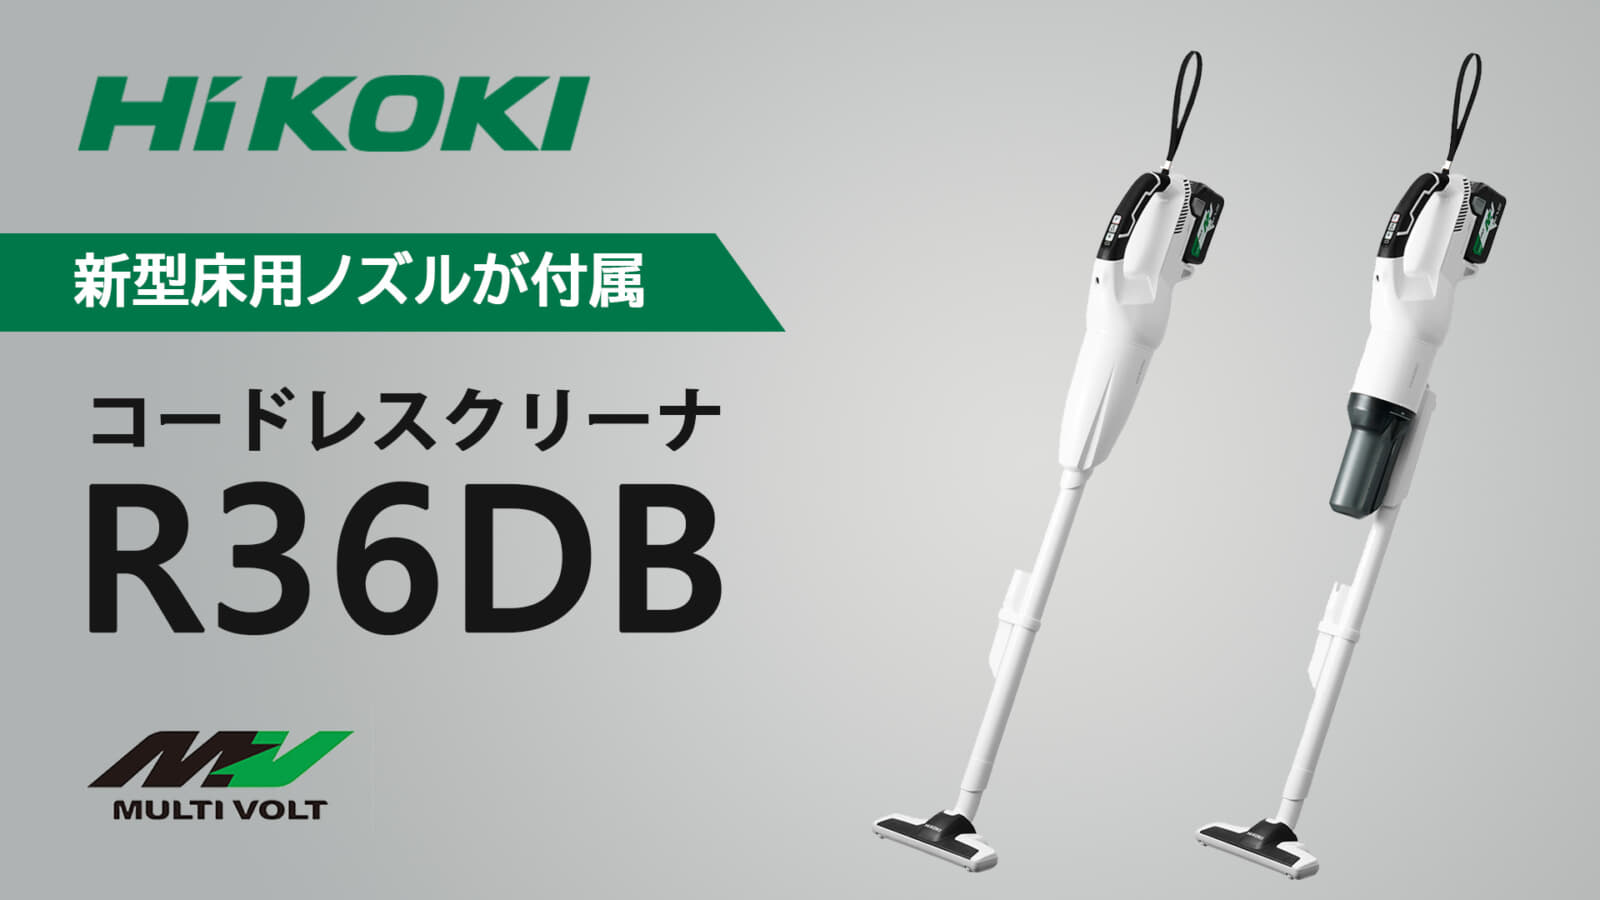 HiKOKI R36DB コードレスクリーナーを発売、ノズルを改善したマイナーチェンジモデル ｜ VOLTECHNO